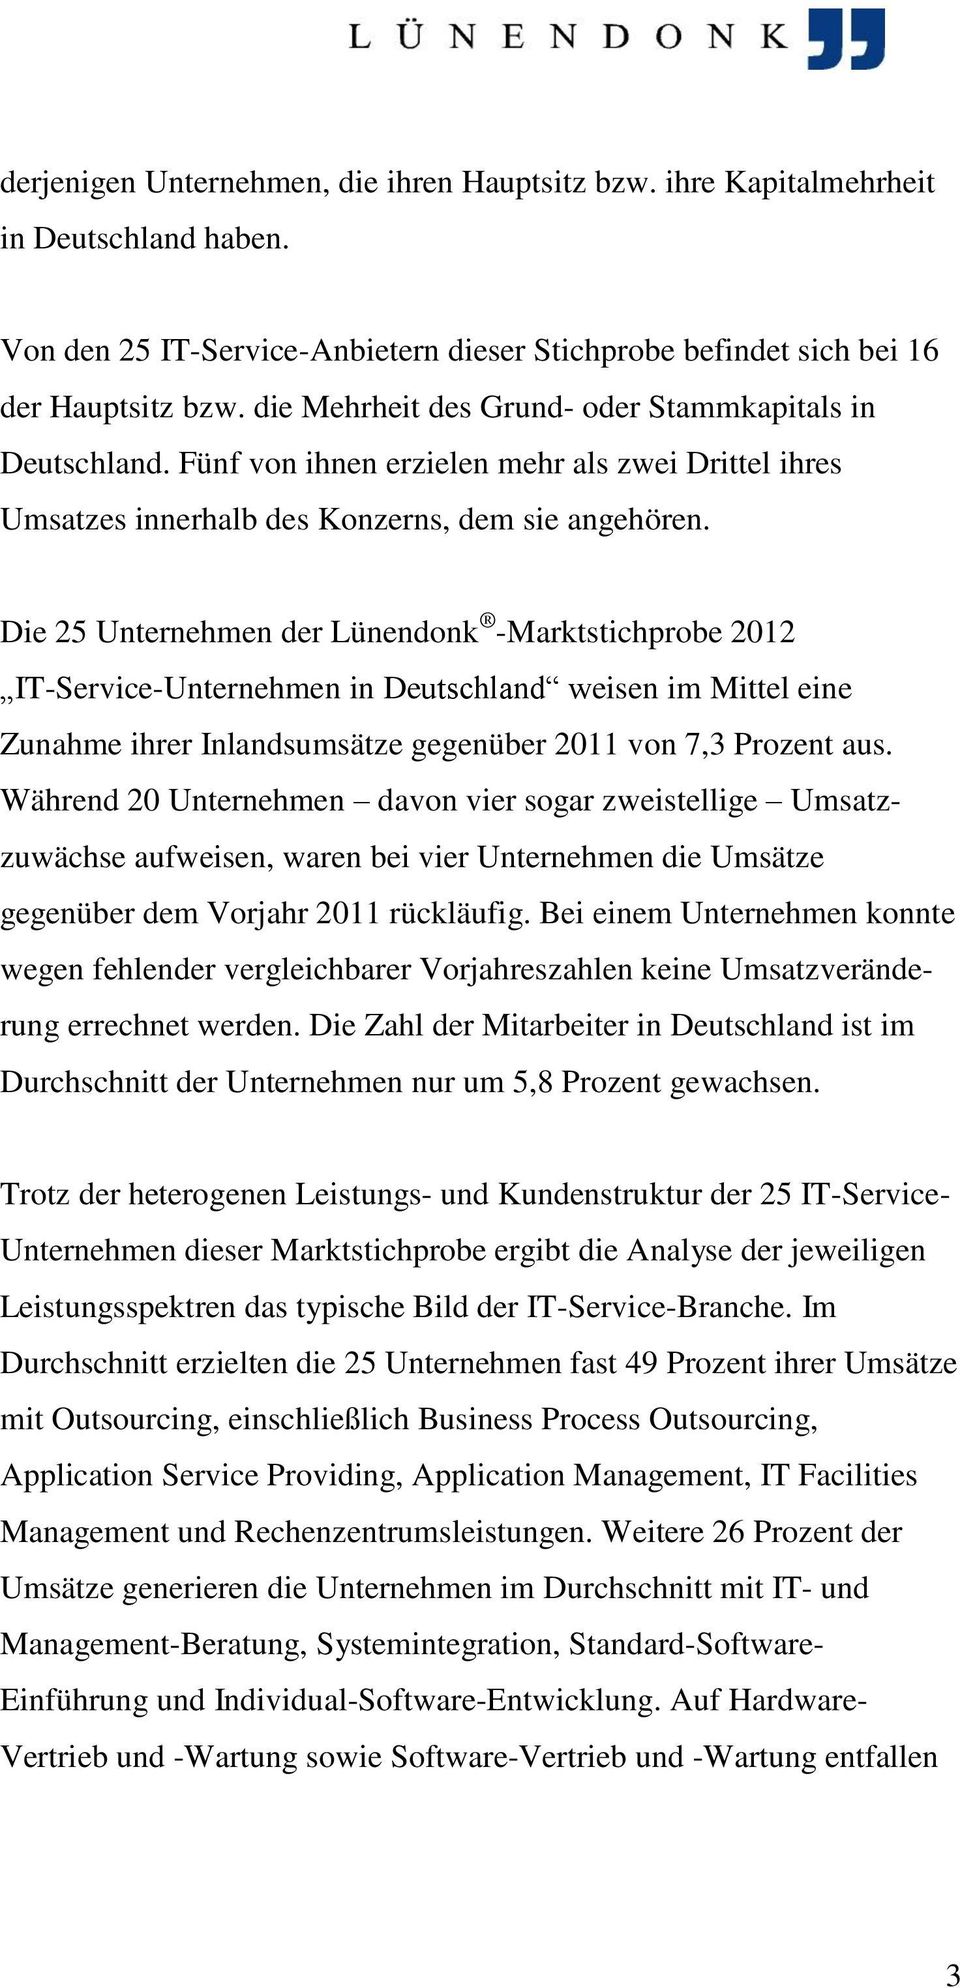 Die 25 Unternehmen der Lünendonk -Marktstichprobe 2012 IT-Service-Unternehmen in Deutschland weisen im Mittel eine Zunahme ihrer Inlandsumsätze gegenüber 2011 von 7,3 Prozent aus.